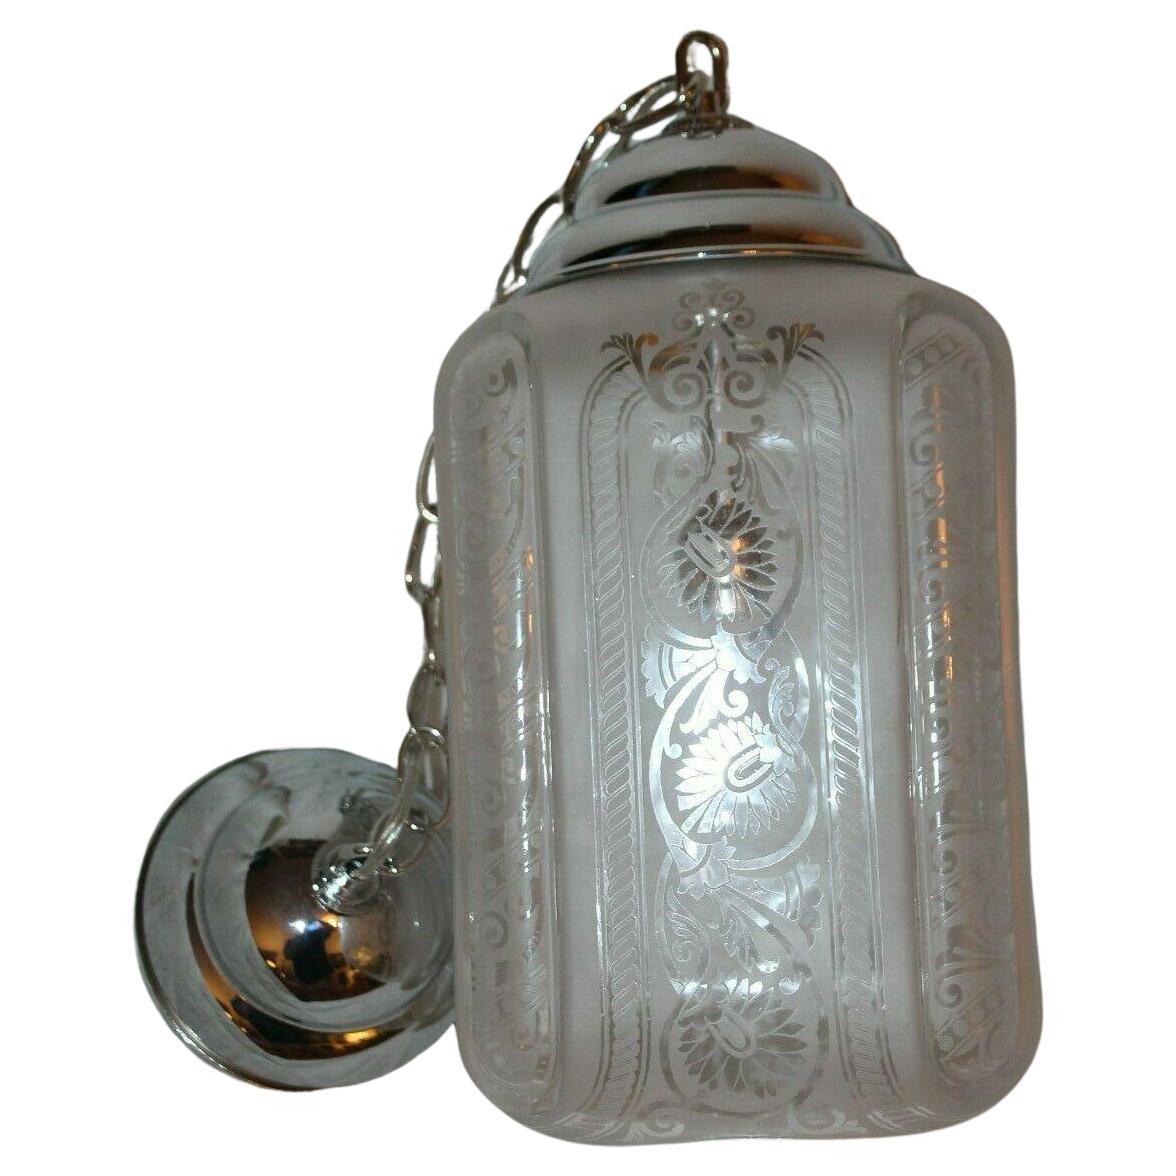 Lanterne Art Déco française des années 1920 par Baccarat, montures en nickel poli